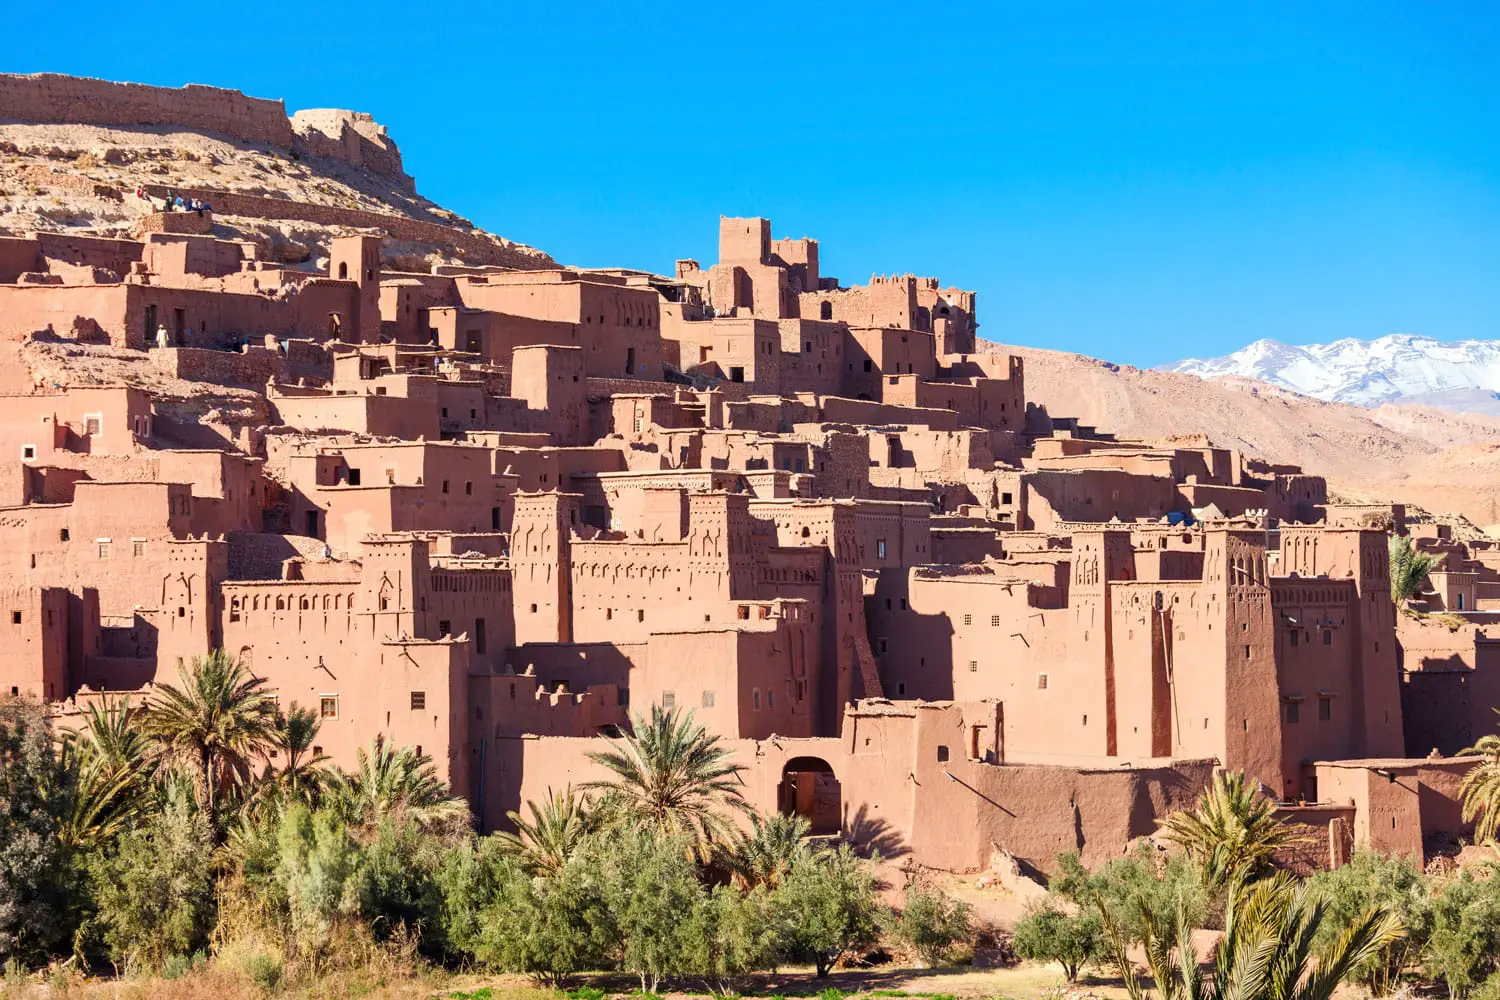 Το Ait Ben Haddou (ή Ait Benhaddou) είναι μια οχυρωμένη πόλη κατά μήκος της πρώην διαδρομής των καραβανιών μεταξύ της Σαχάρας και του Μαρακές στο Μαρόκο